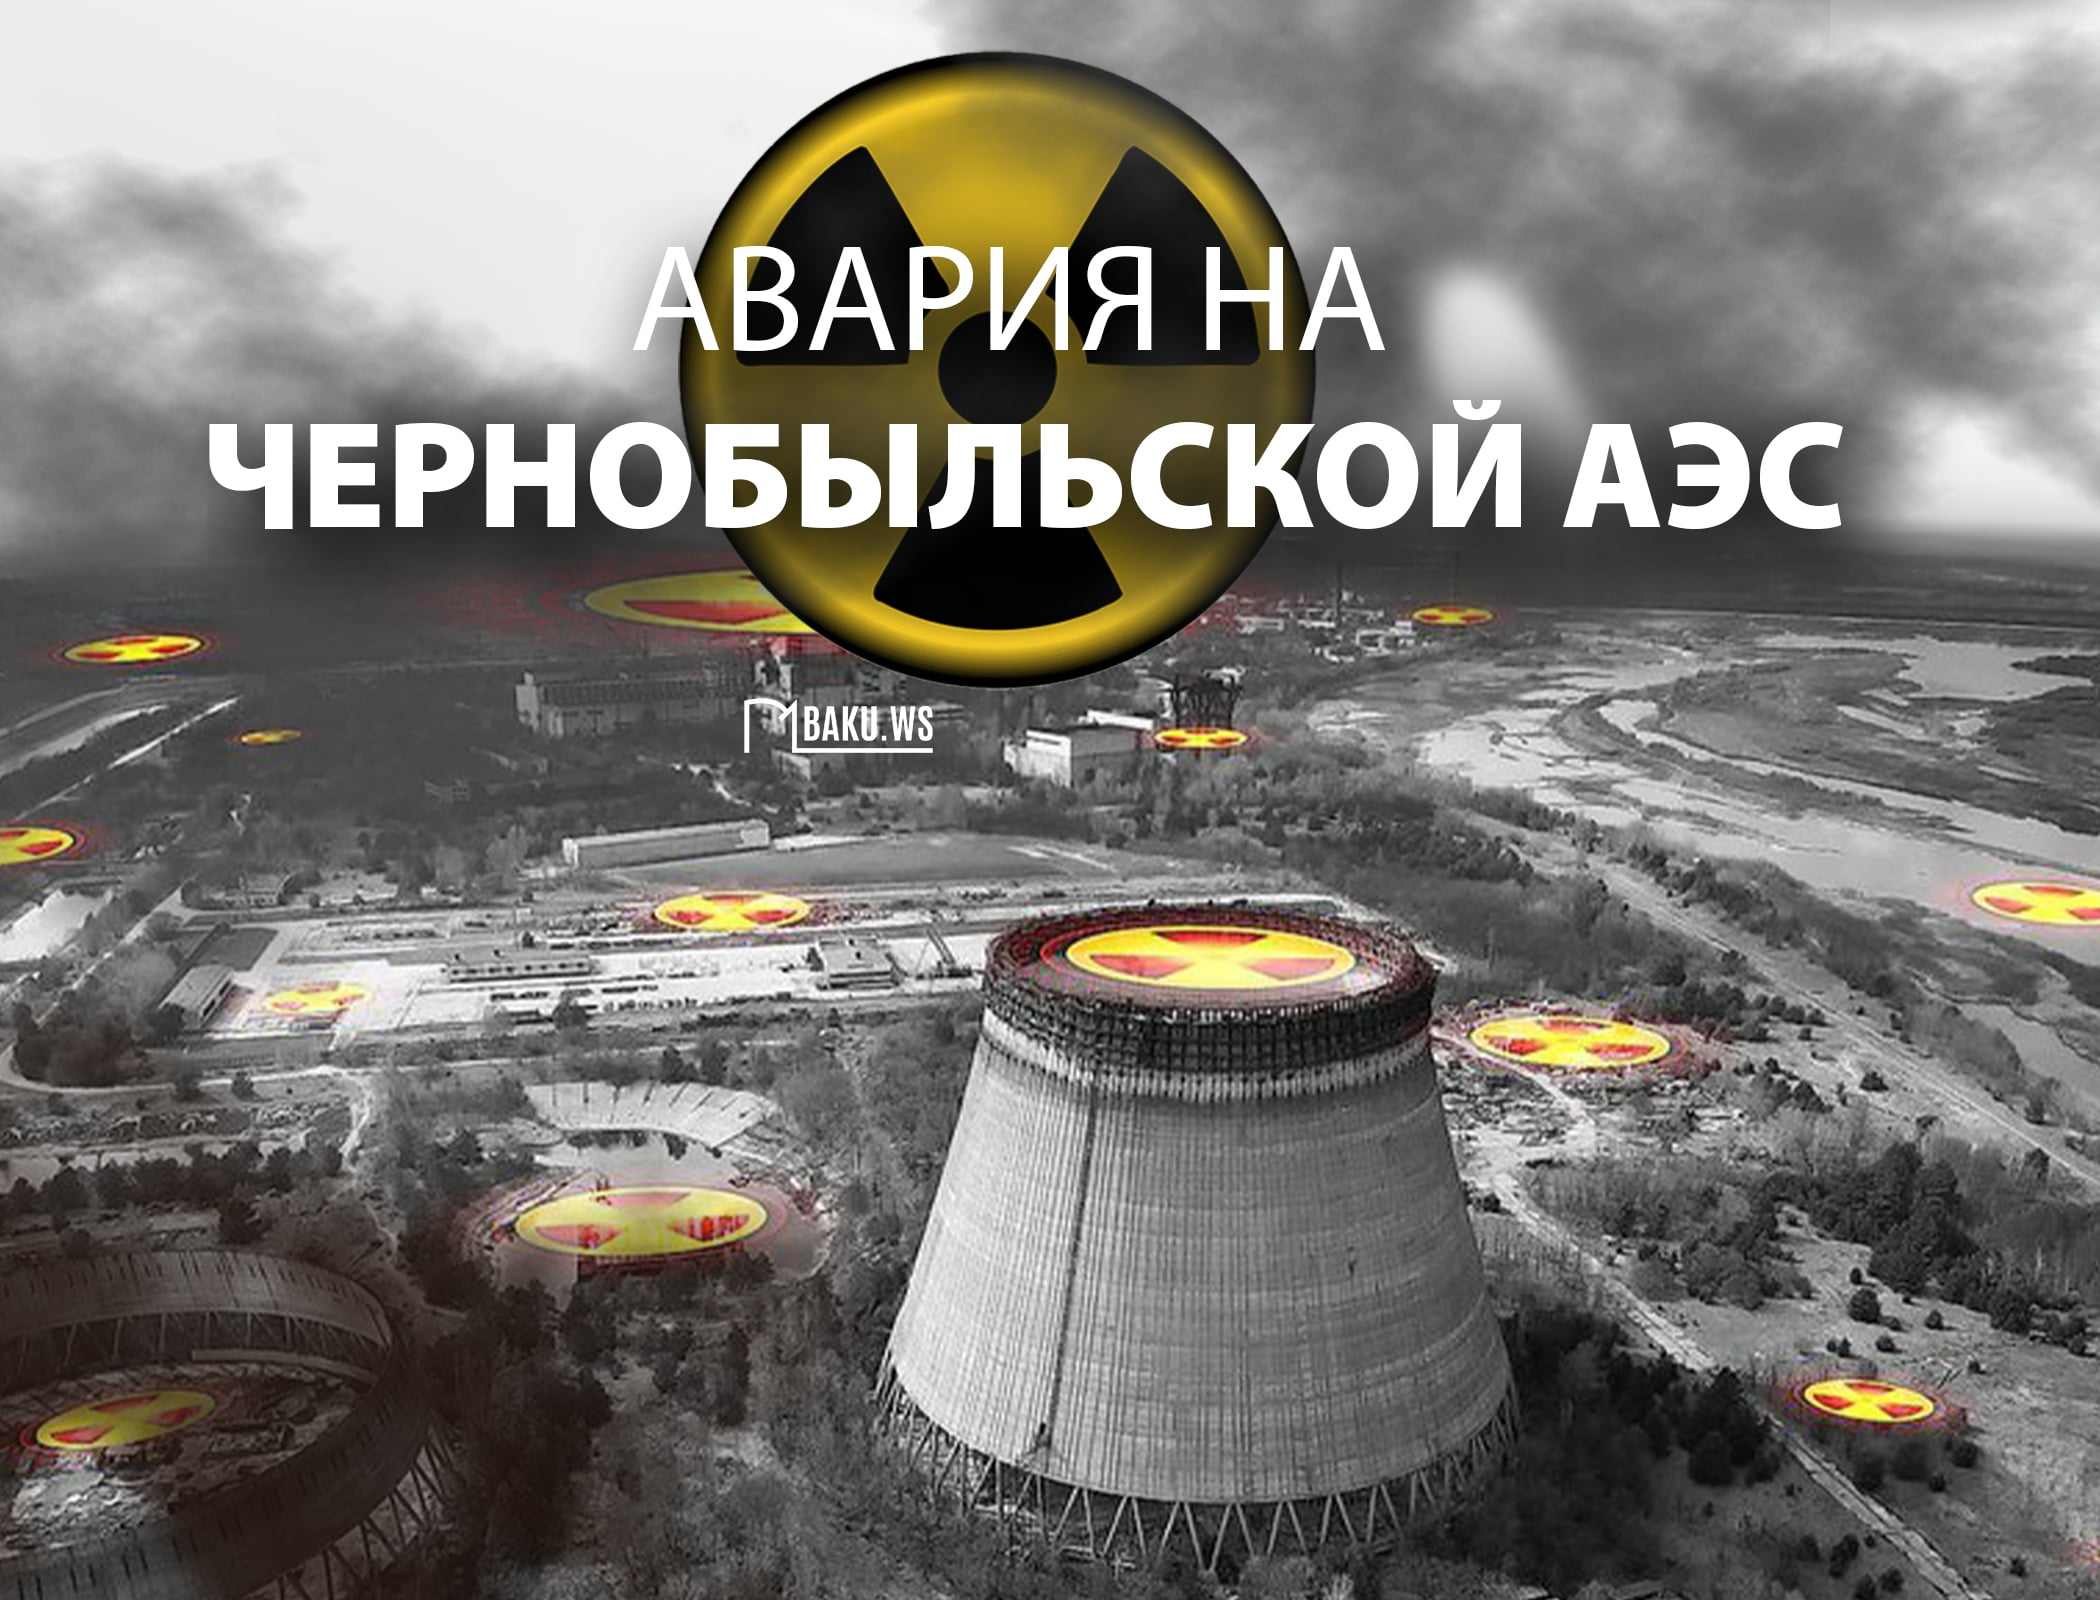 38 лет со дня Чернобыльской катастрофы - одной из крупнейших аварий в истории человечества